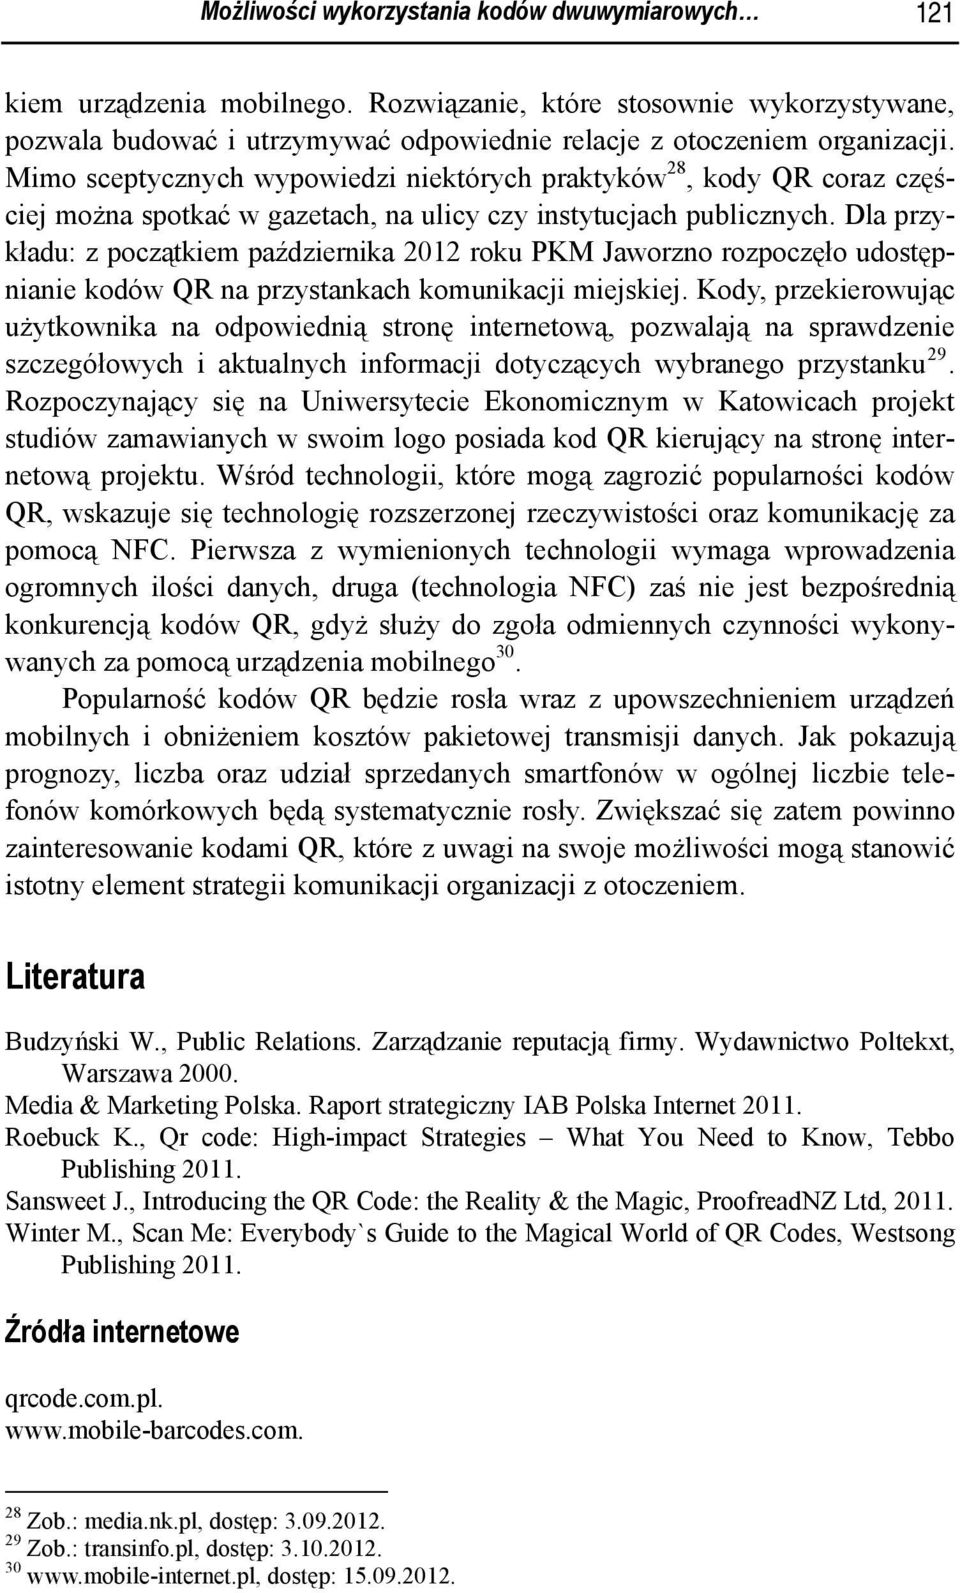 Dla przykładu: z początkiem października 2012 roku PKM Jaworzno rozpoczęło udostępnianie kodów QR na przystankach komunikacji miejskiej.